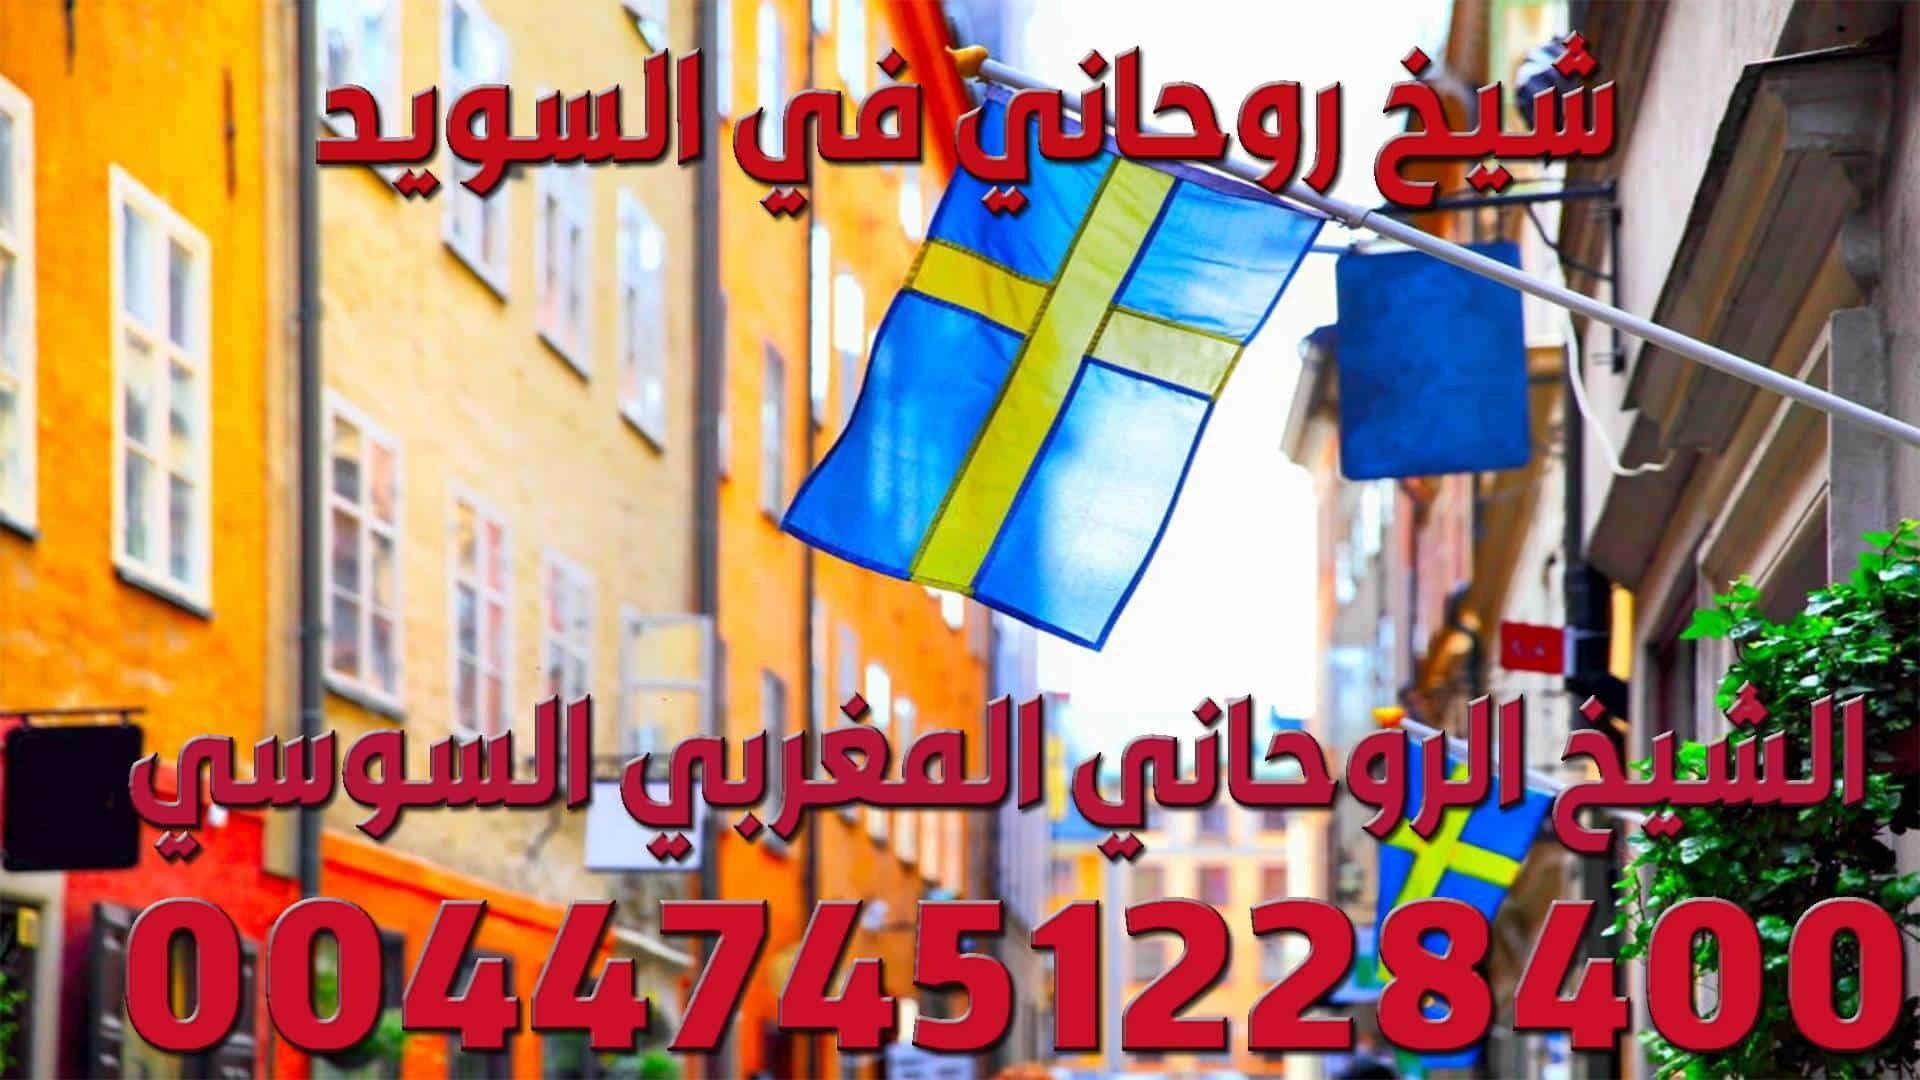 شيخ روحاني في السويد